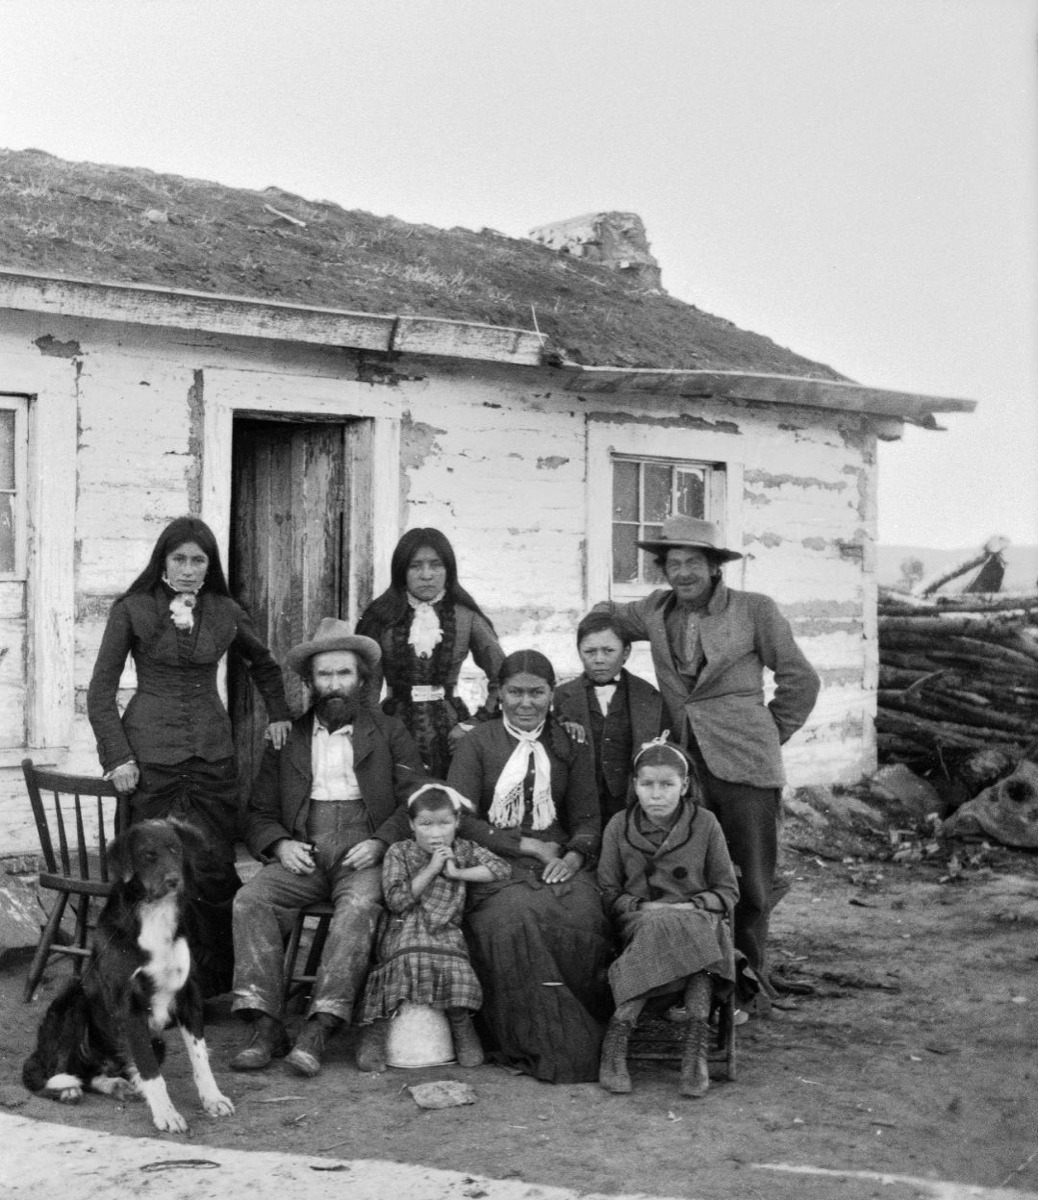 Tom Shane Family, 1880, at Absarokee Agency, by F. Jay Haynes, courtesy Montana Historical Society